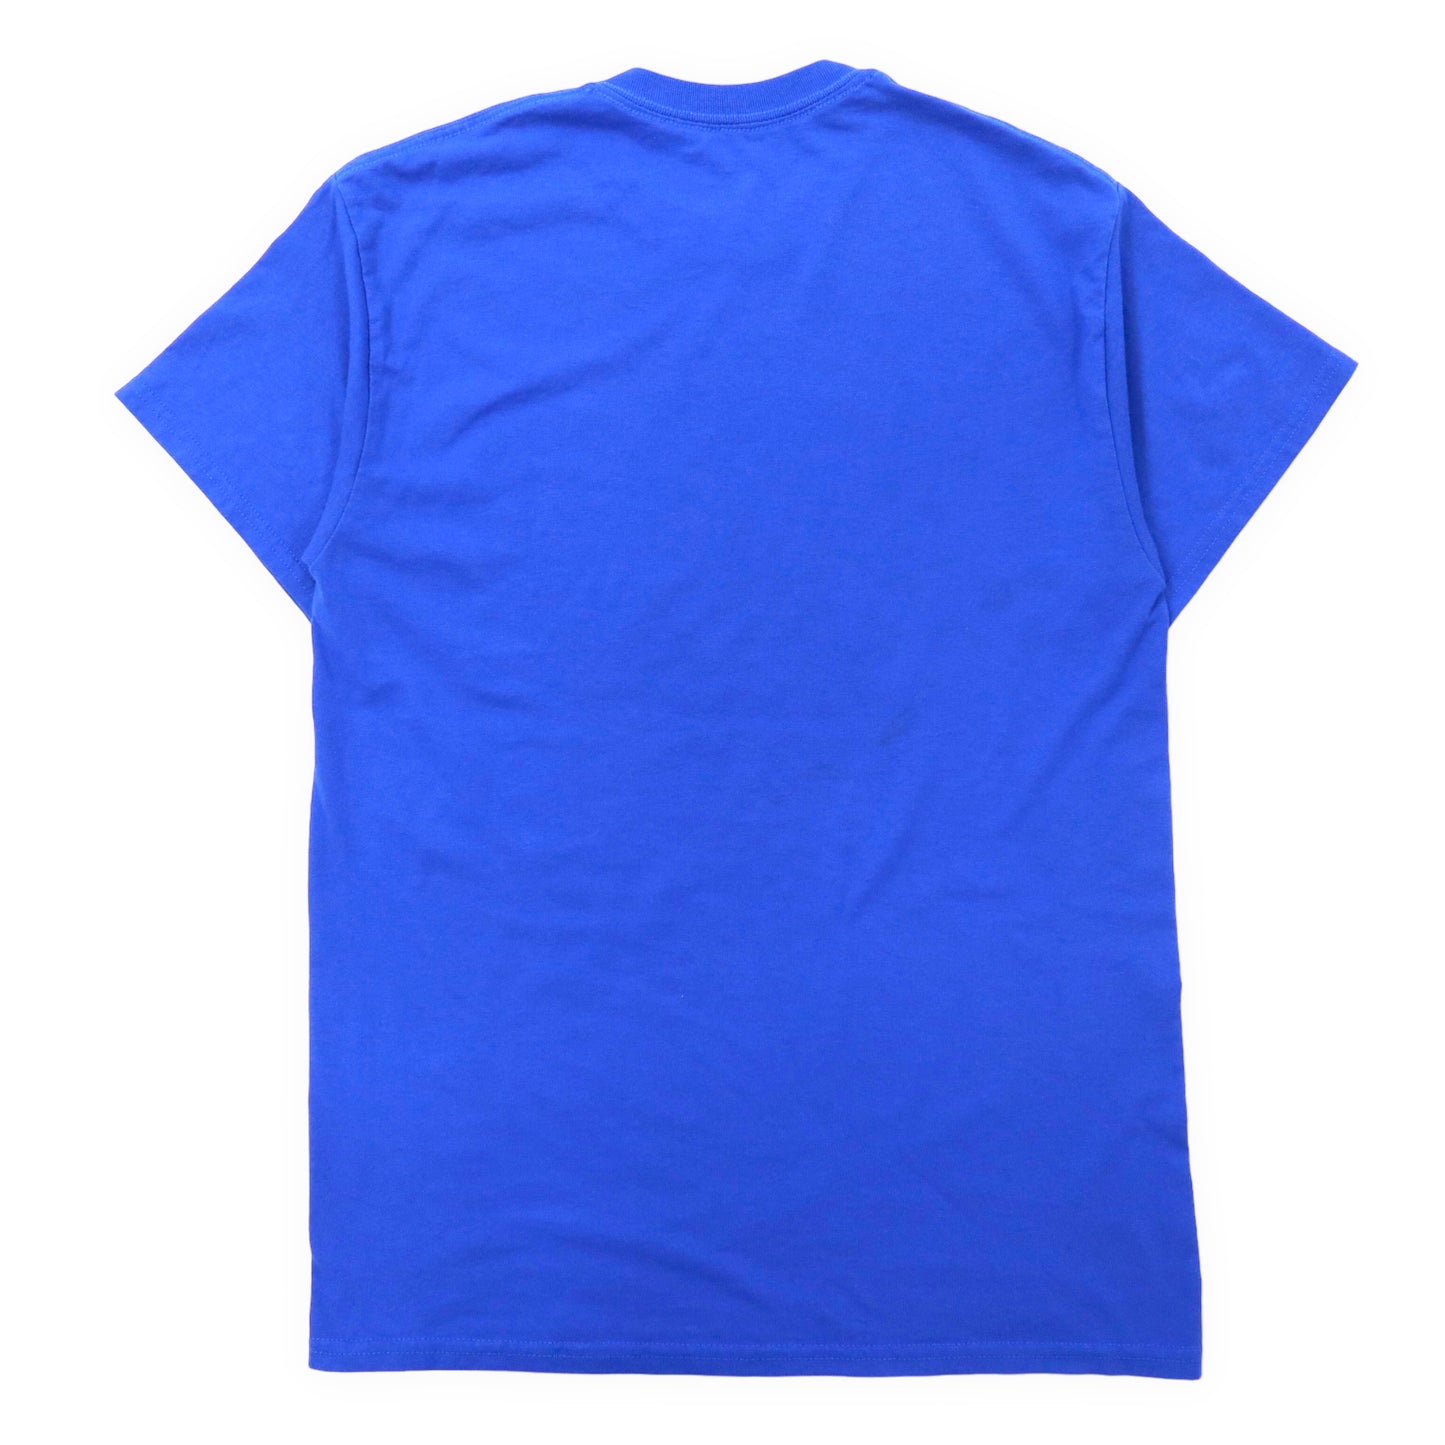 GILDAN カレッジプリントTシャツ M ブルー コットン CHICAGO